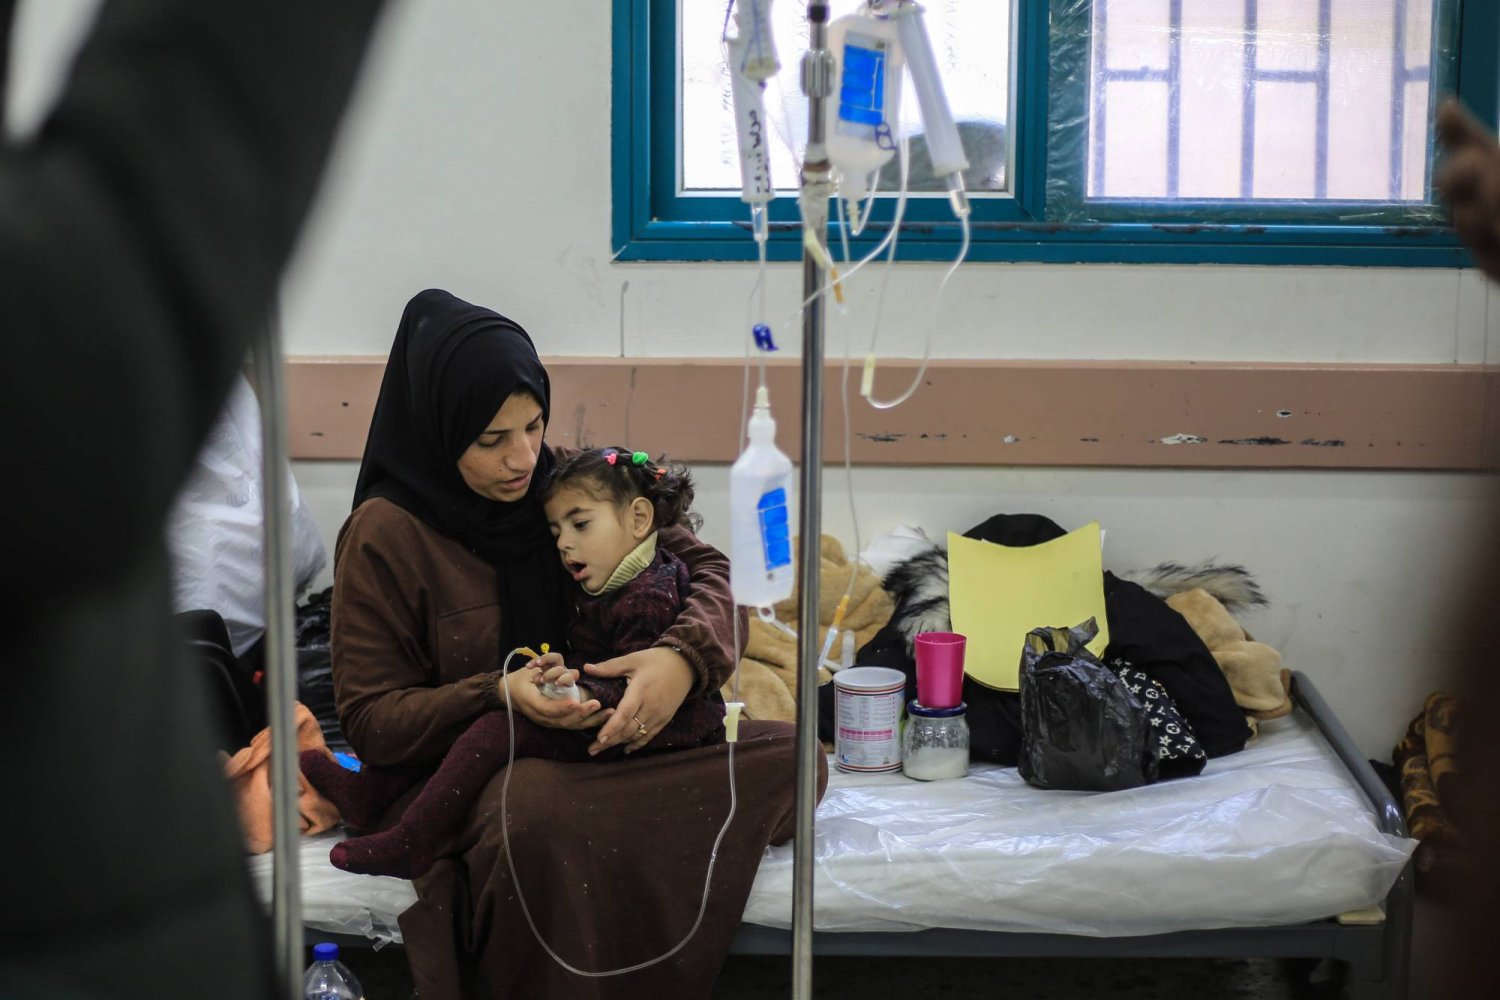 طفلة فلسطينية تتلقى العلاج في مستشفى خاص للأطفال في مدينة رفح متخصص في تقديم الرعاية للأطفال الذين يعانون من سوء التغذية ونقص الأدوية (د.ب.أ)